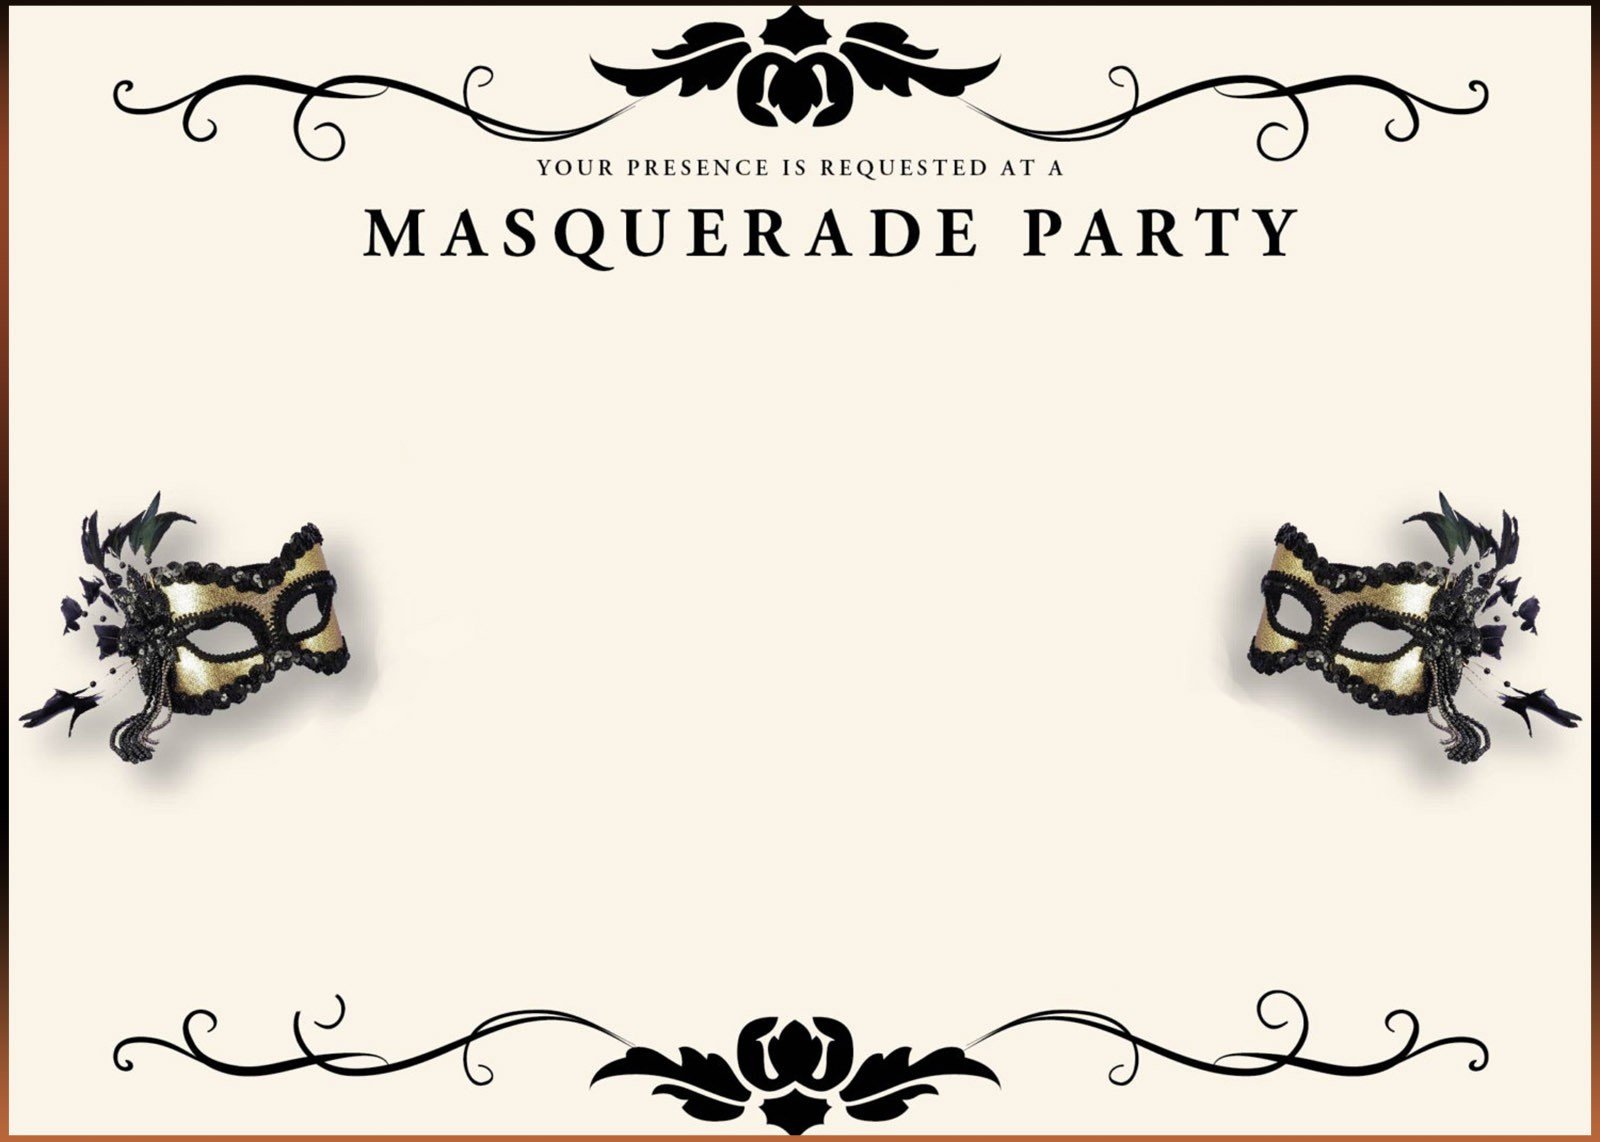 Masquerade Invitations Template Free Free Printable Masquerade Invitation Templates